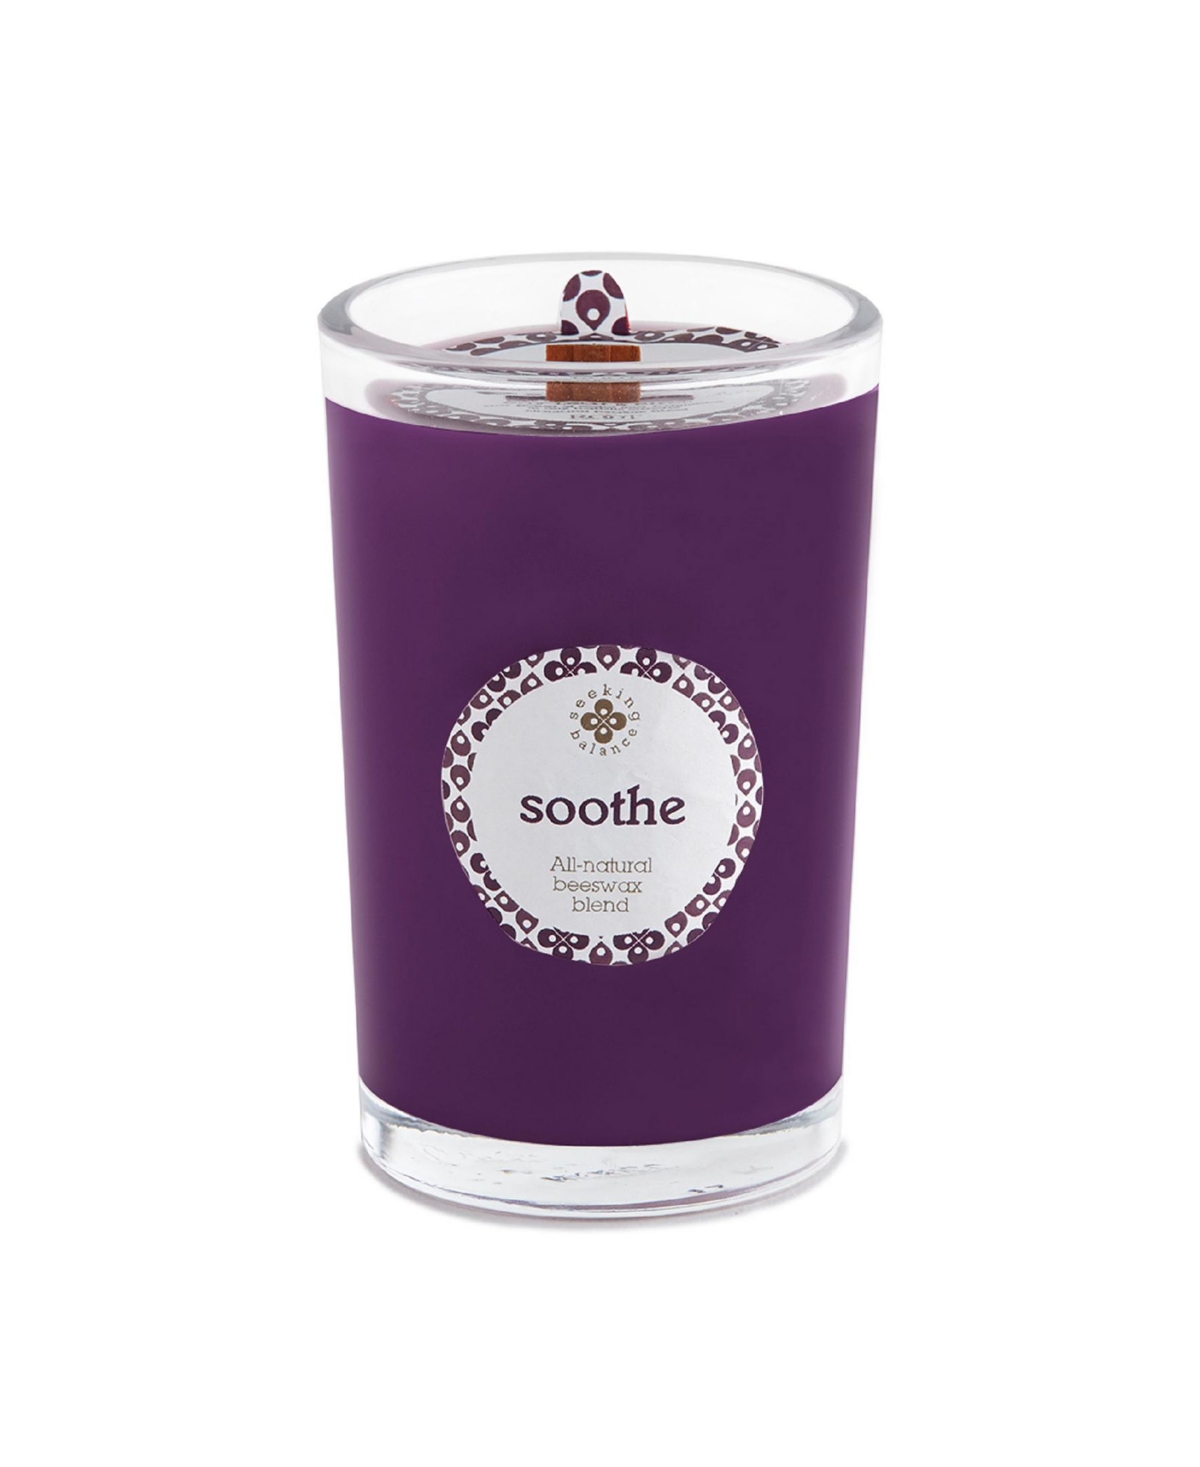 Seeking Balance Soothe Bay Leaf Birch Spa Jar Candle, 8 oz - Dark Purple